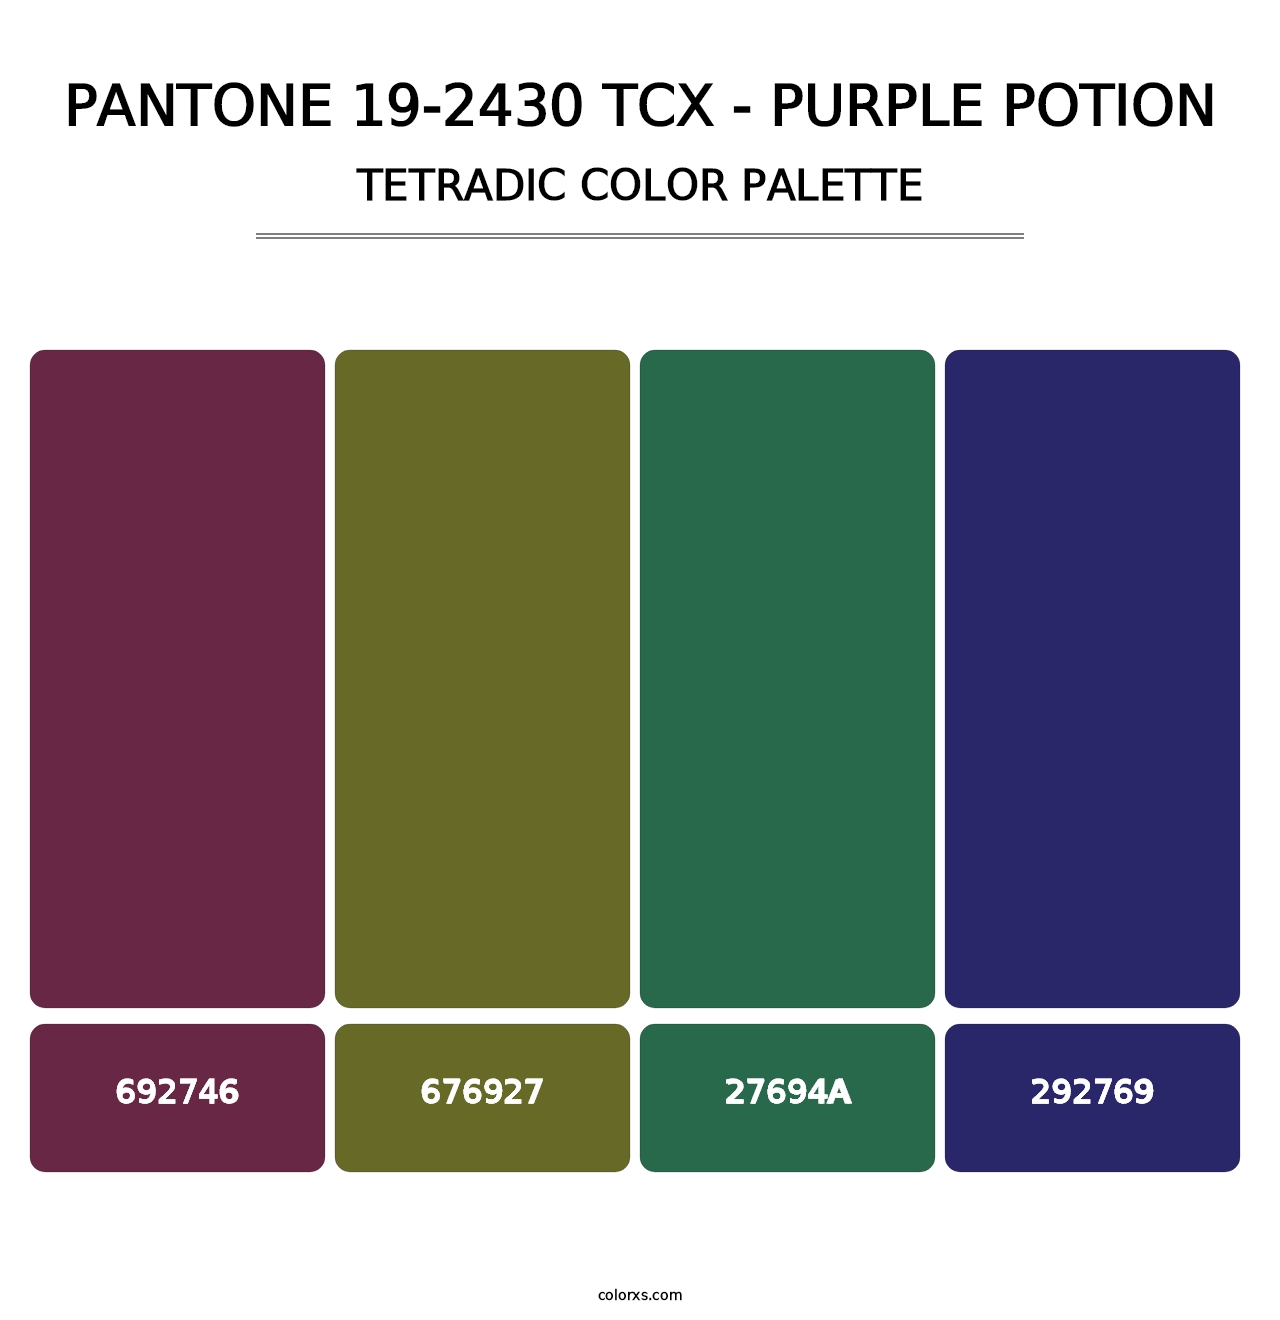 PANTONE 19-2430 TCX - Purple Potion - Tetradic Color Palette